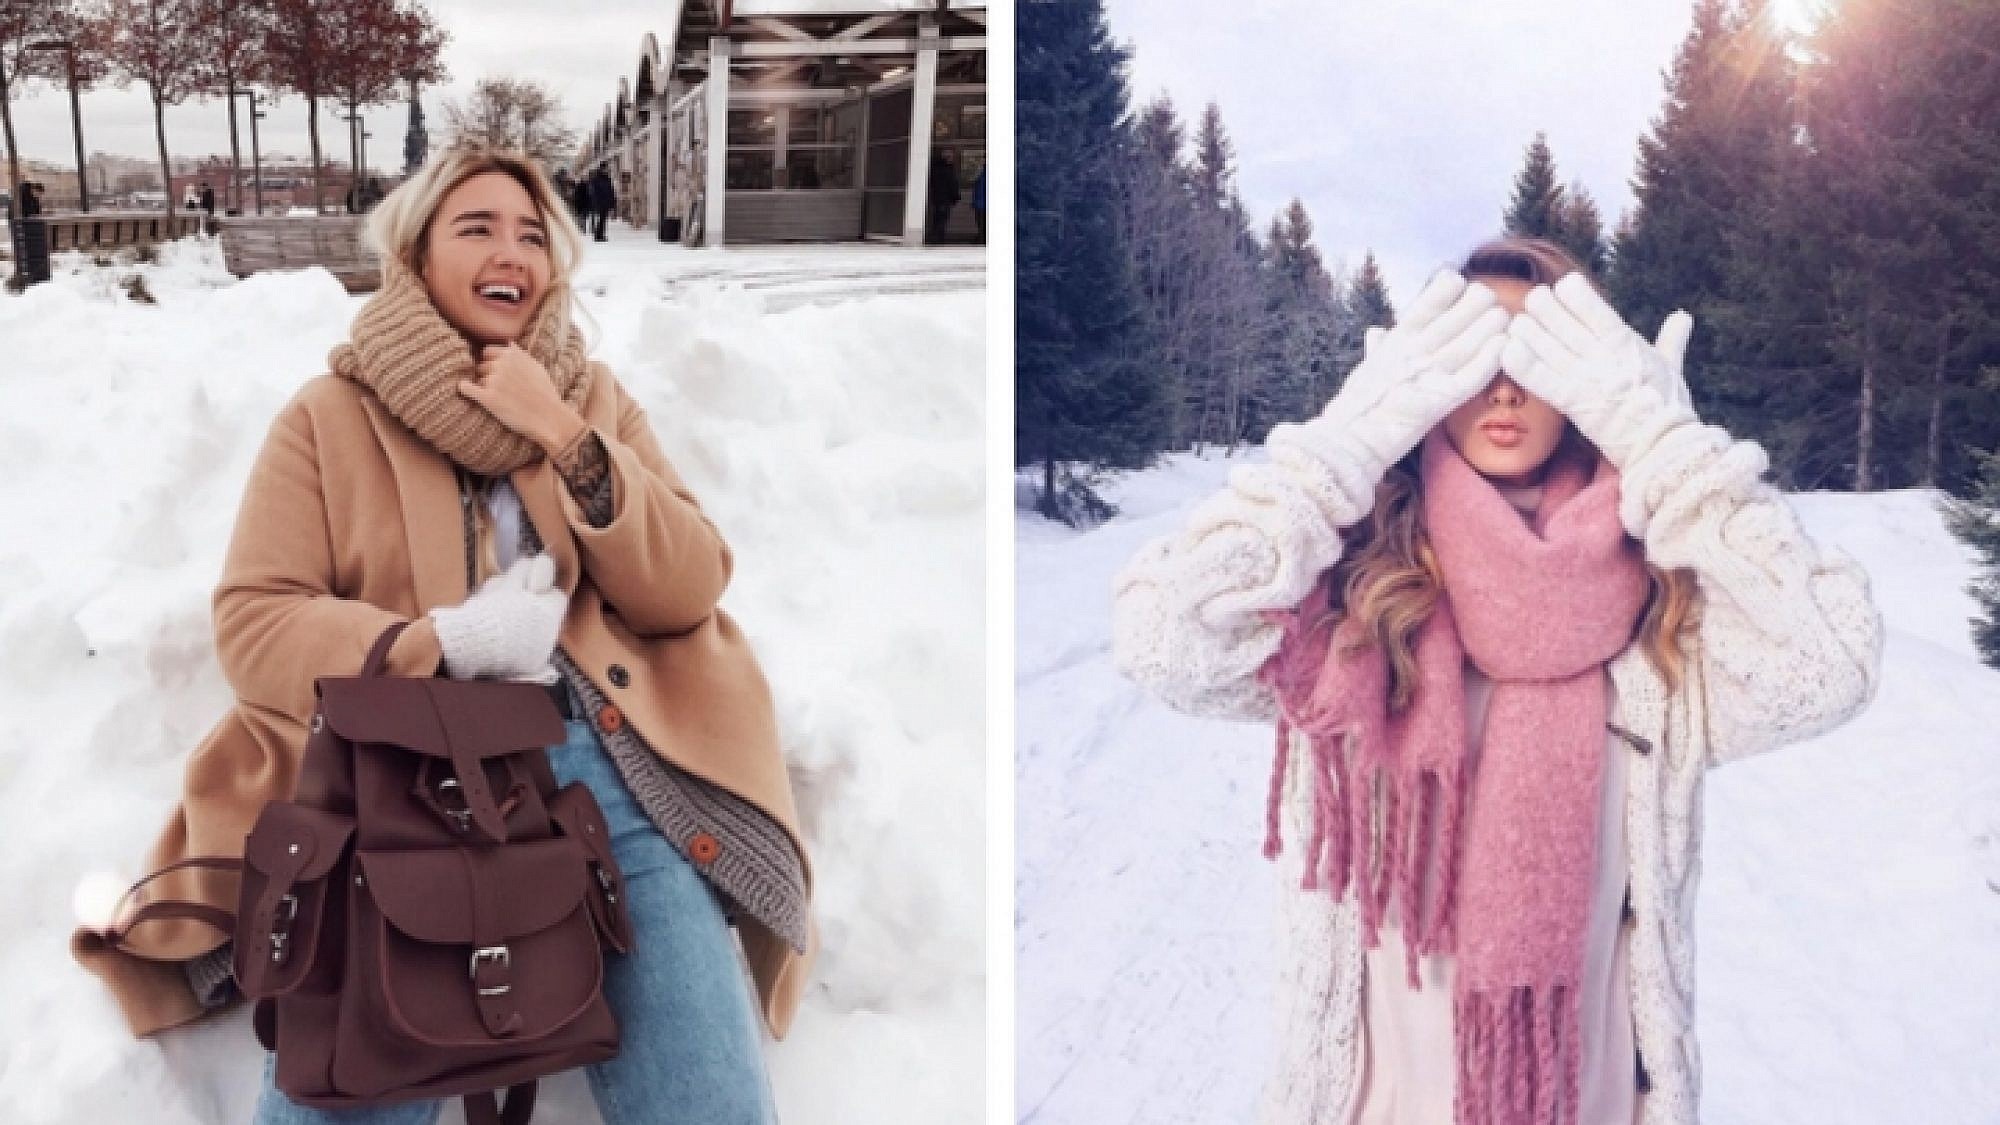 בלוגריות אופנה בחורף: מתוך חשבונות האינסטגרם @julia.haupt ו-@mezenova